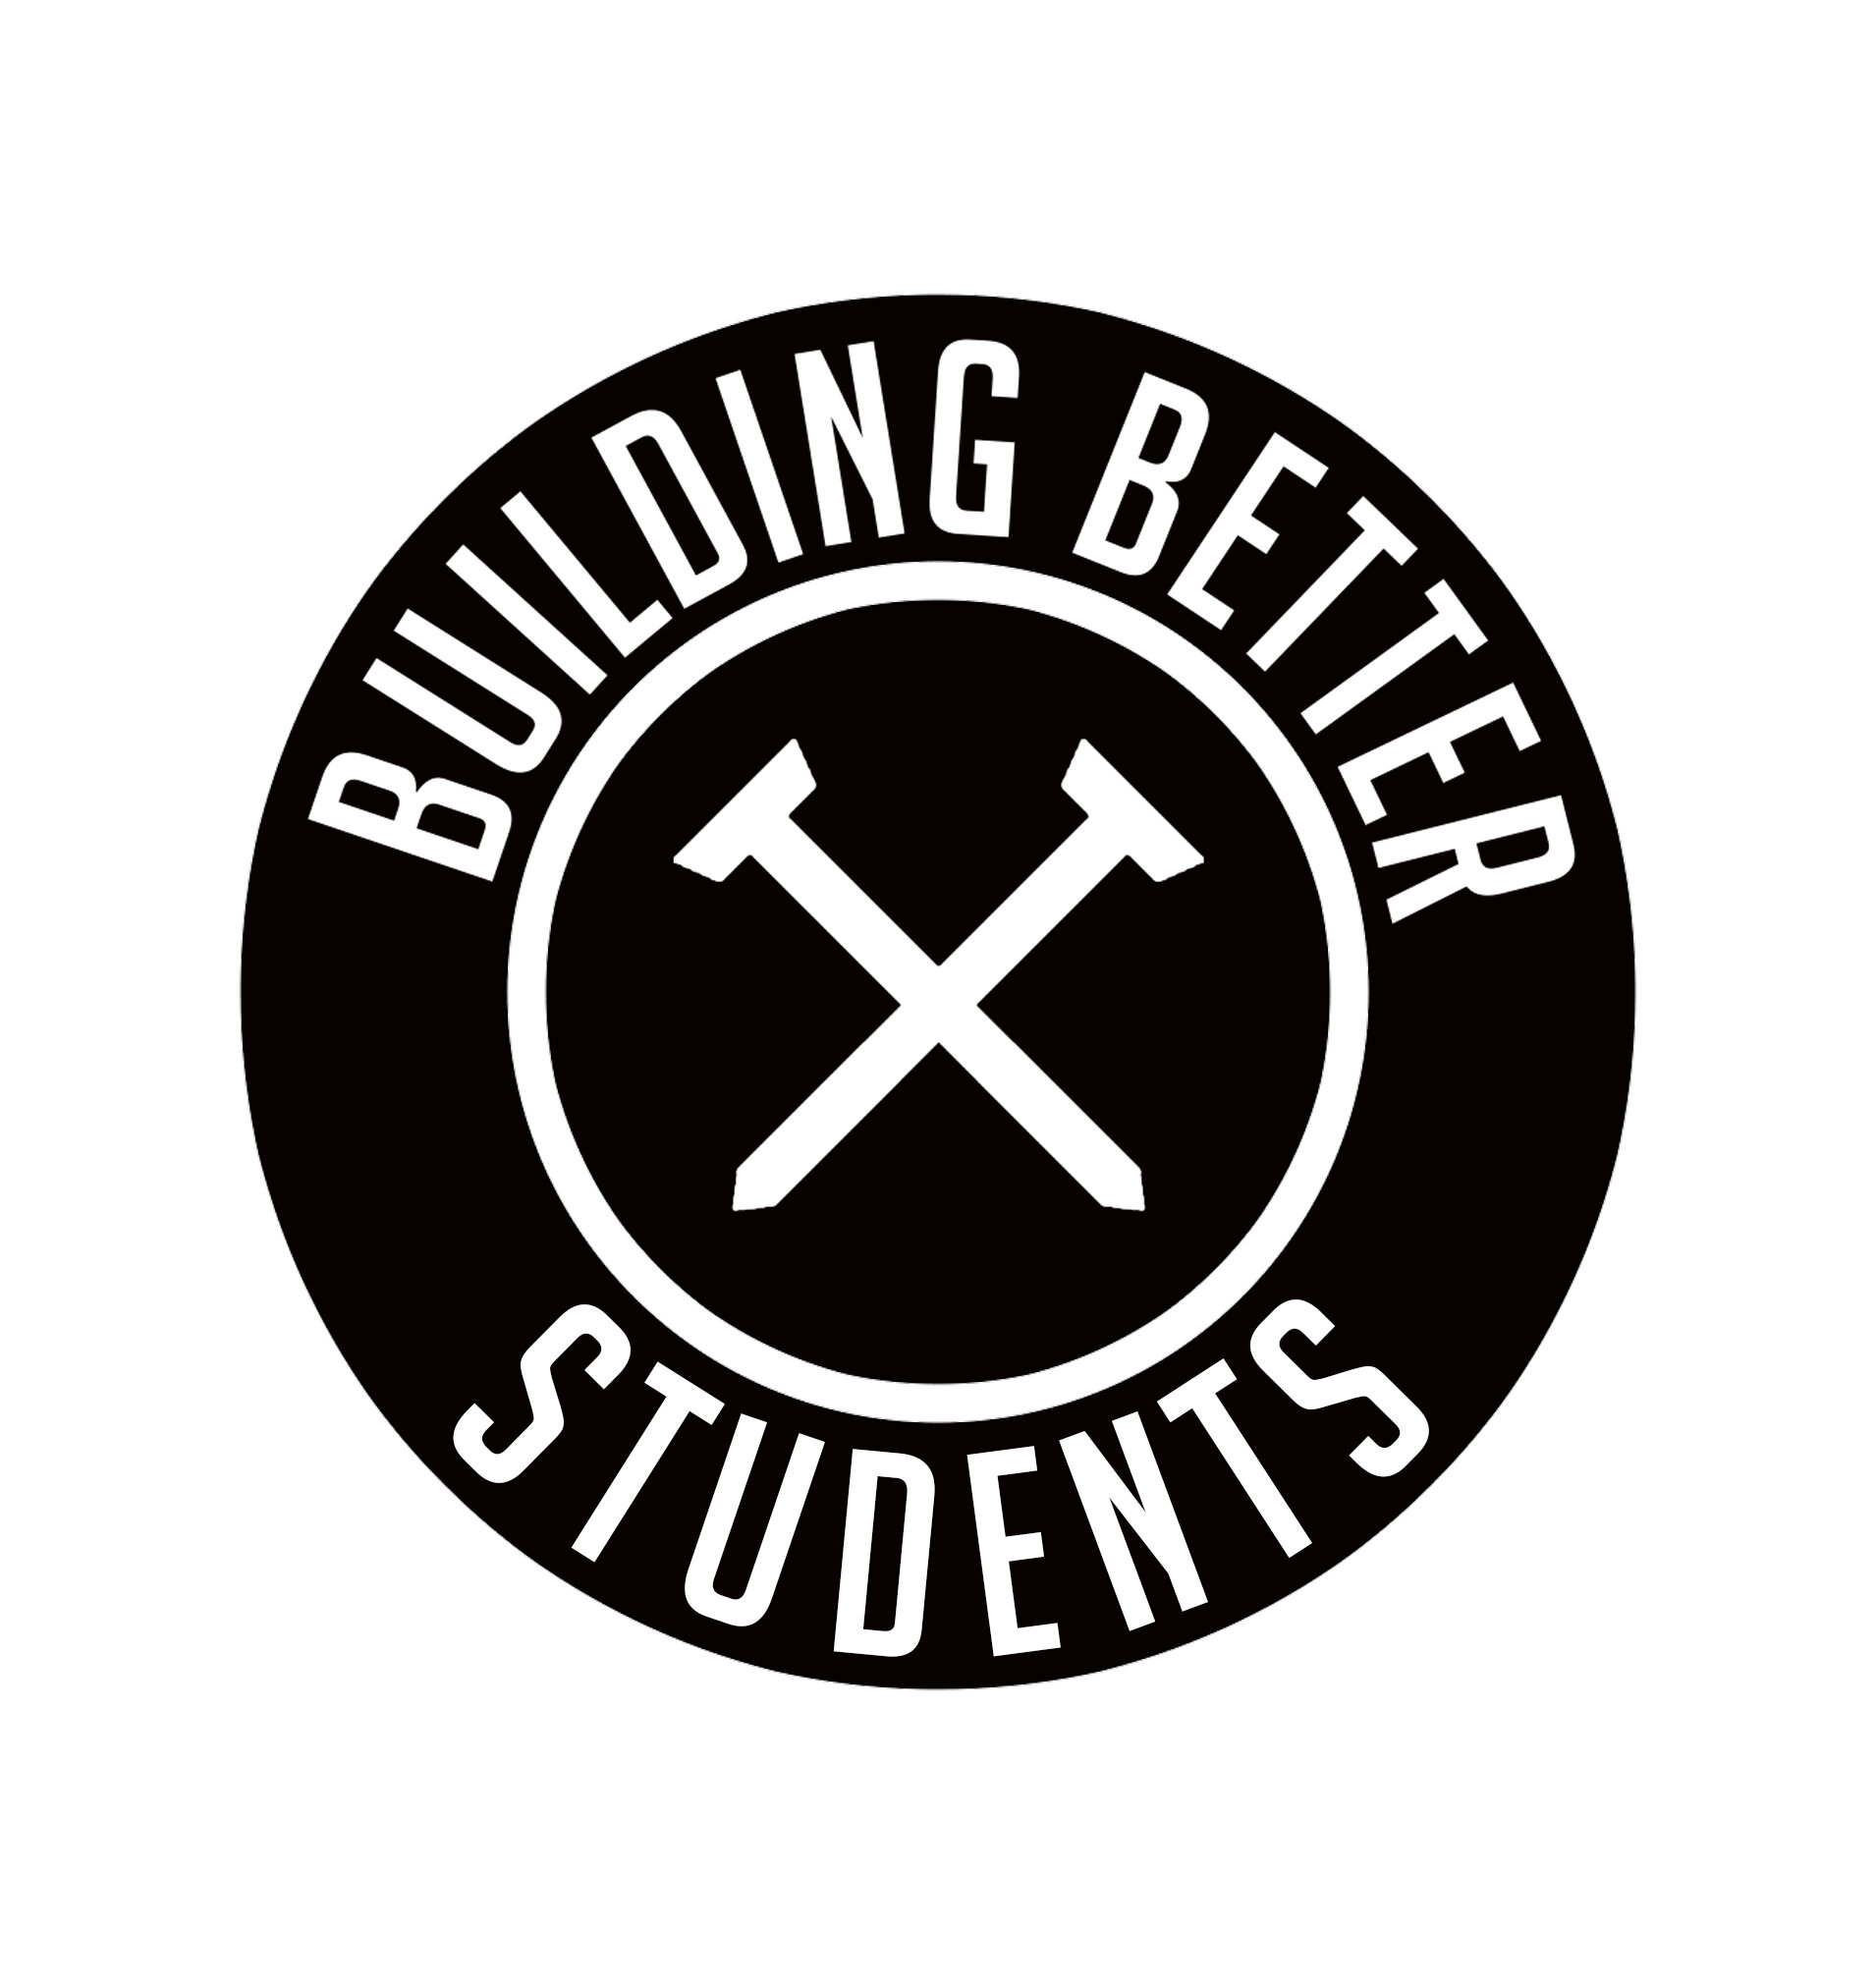 Building Better Alternate Logo (Students) Black:White.jpg